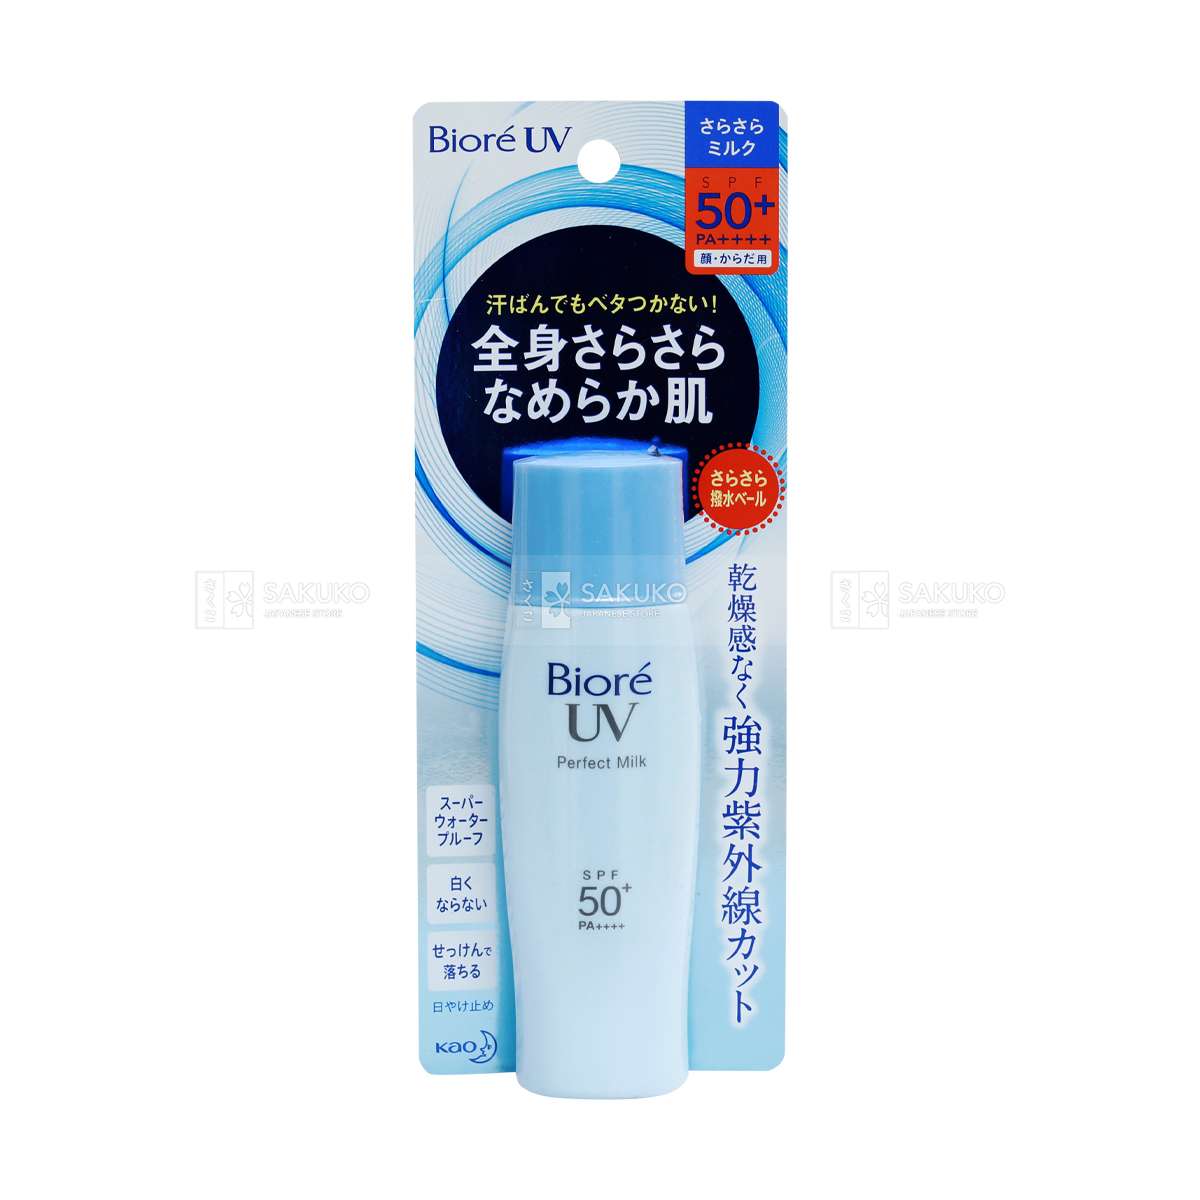 Sữa chống nắng màu xanh Biore UV Perfect Milk SPF50+ chứa nhiều thành phần tự nhiên, bảo vệ da tối ưu